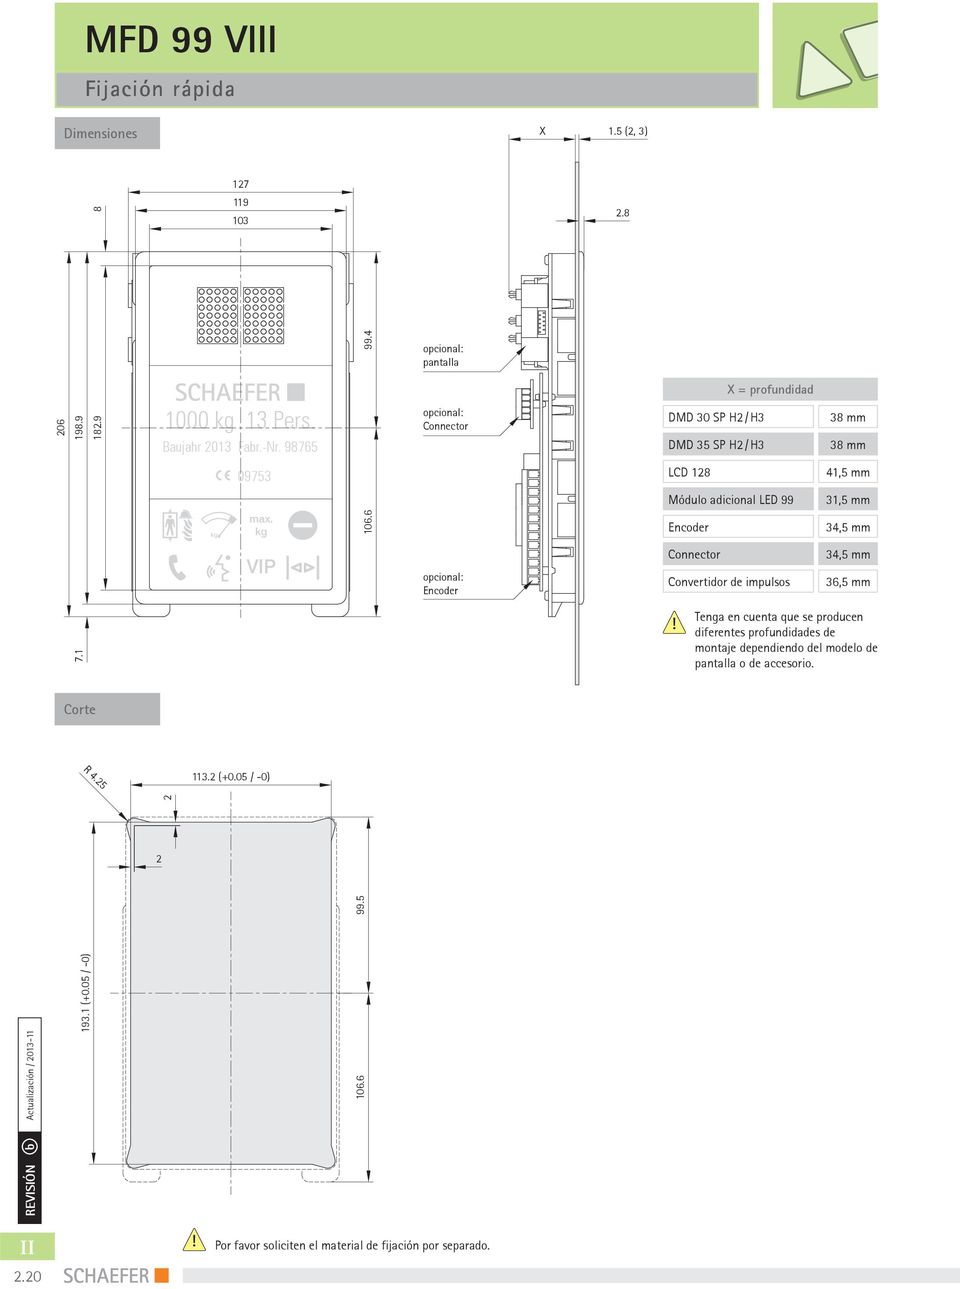 6 Encoder 3,5 mm VIP opcional: Encoder Connector Convertidor de impulsos 3,5 mm 36,5 mm 7.